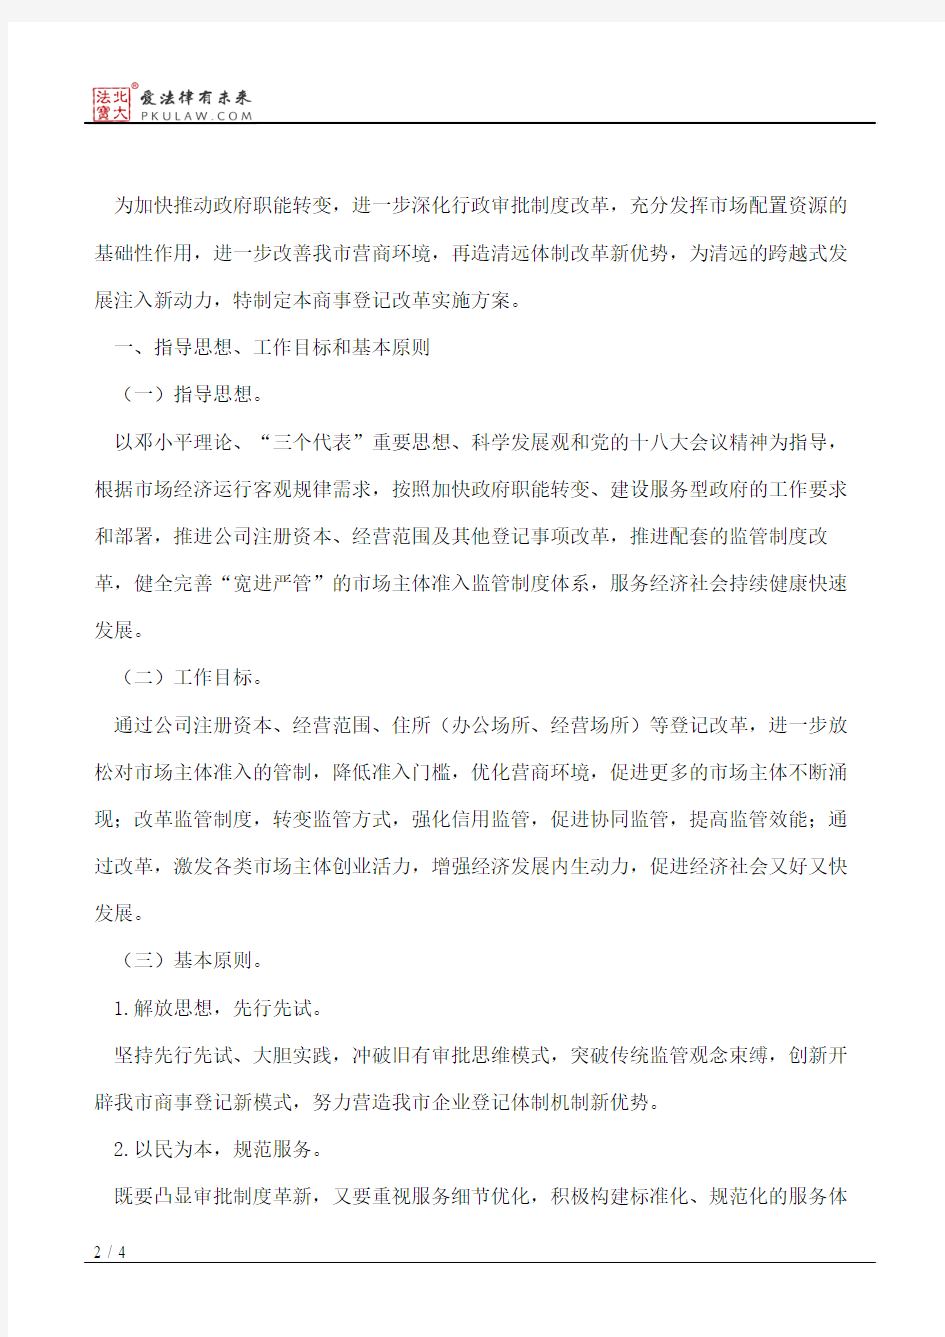 清远市人民政府关于印发《清远市商事登记改革实施方案》的通知